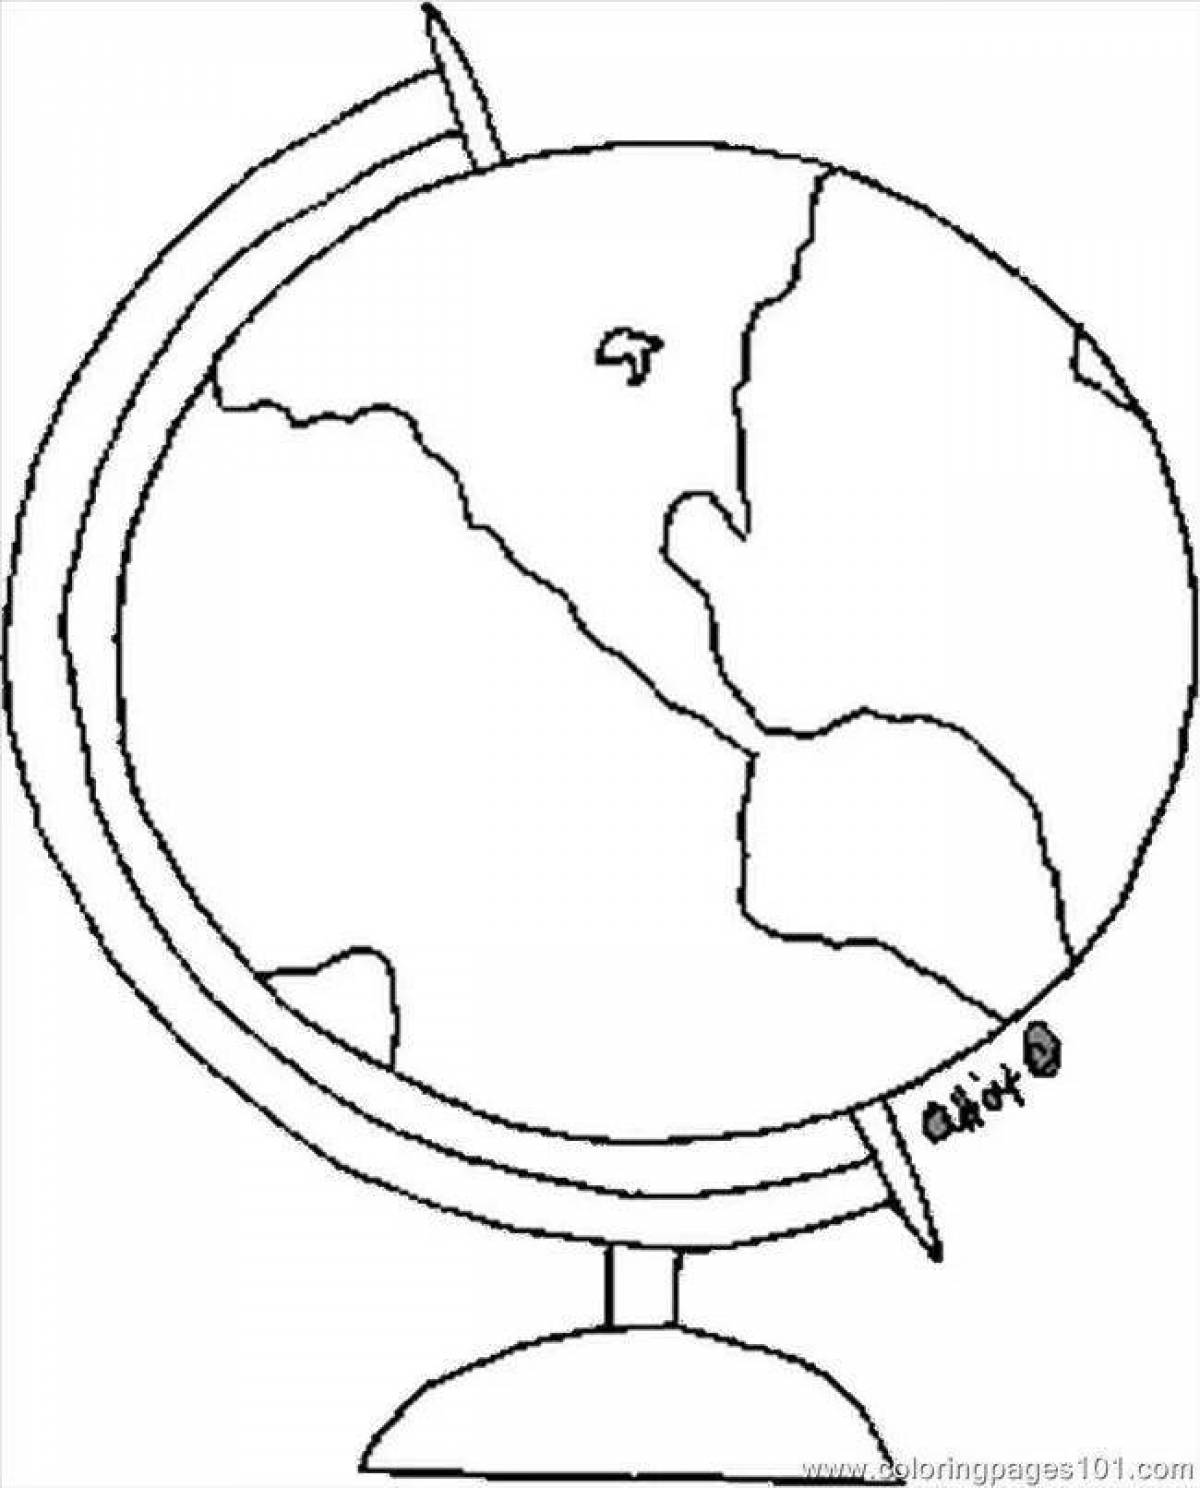 Раскрашиваем глобус. Глобус раскраска. Глобус раскраска для детей. Раскраска глобуса земли для детей. Контурное изображение глобуса.